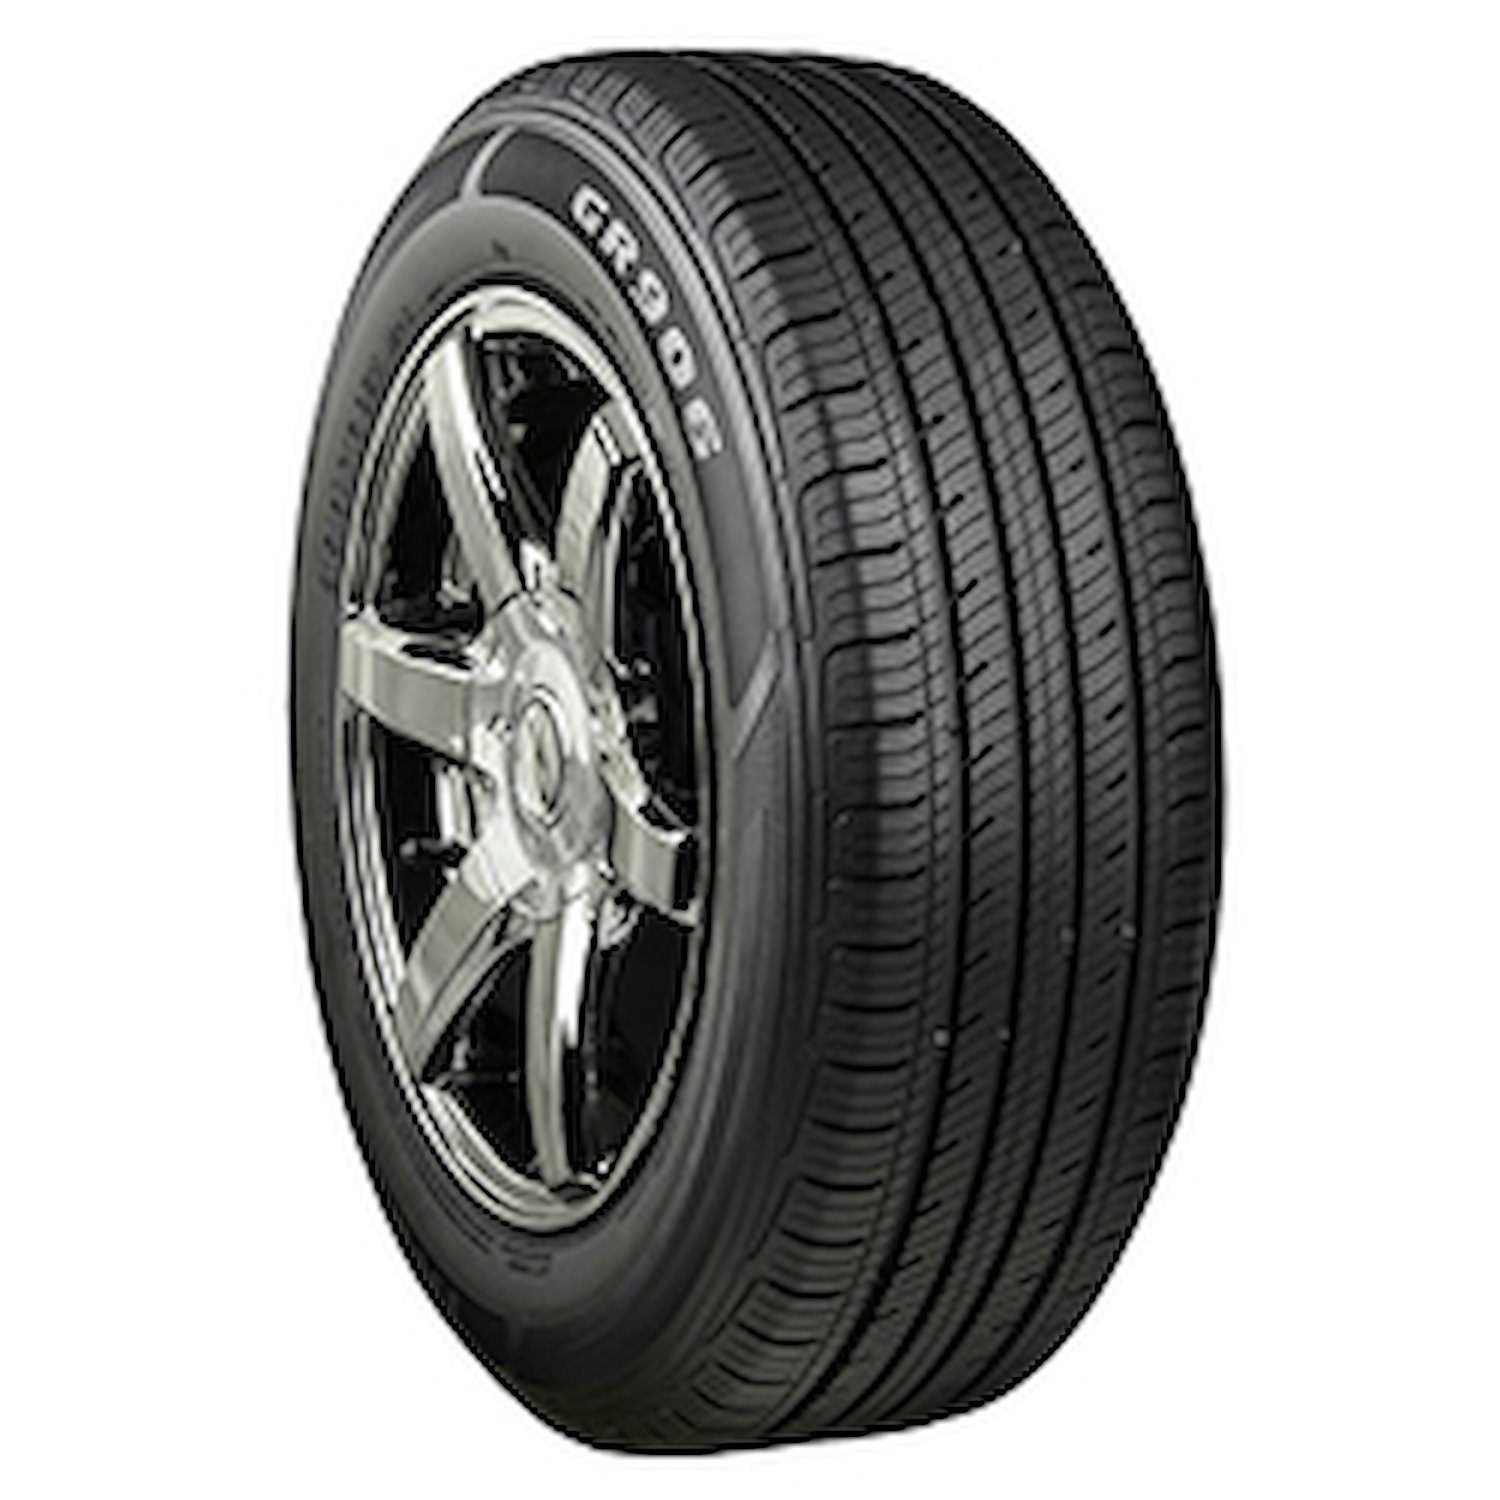 GR906 Tire, 215/60R17 96H